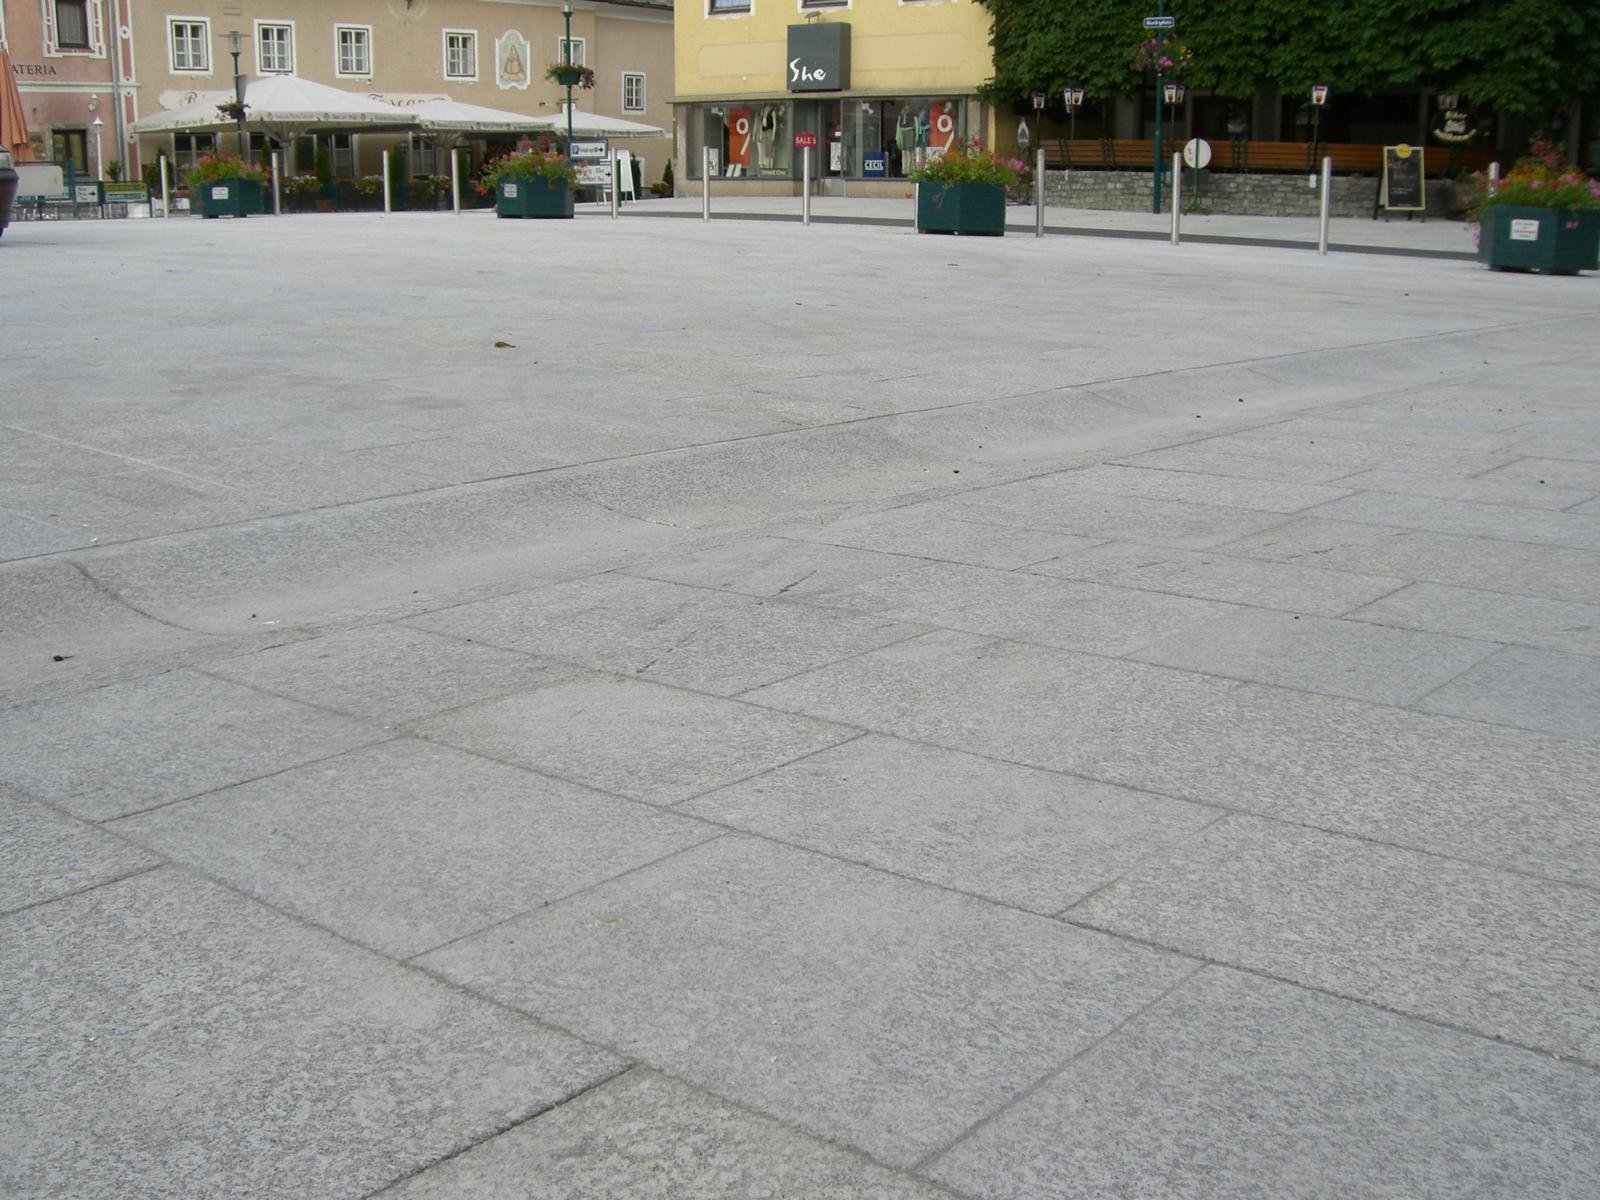 Tamsweg - Marktplatz13